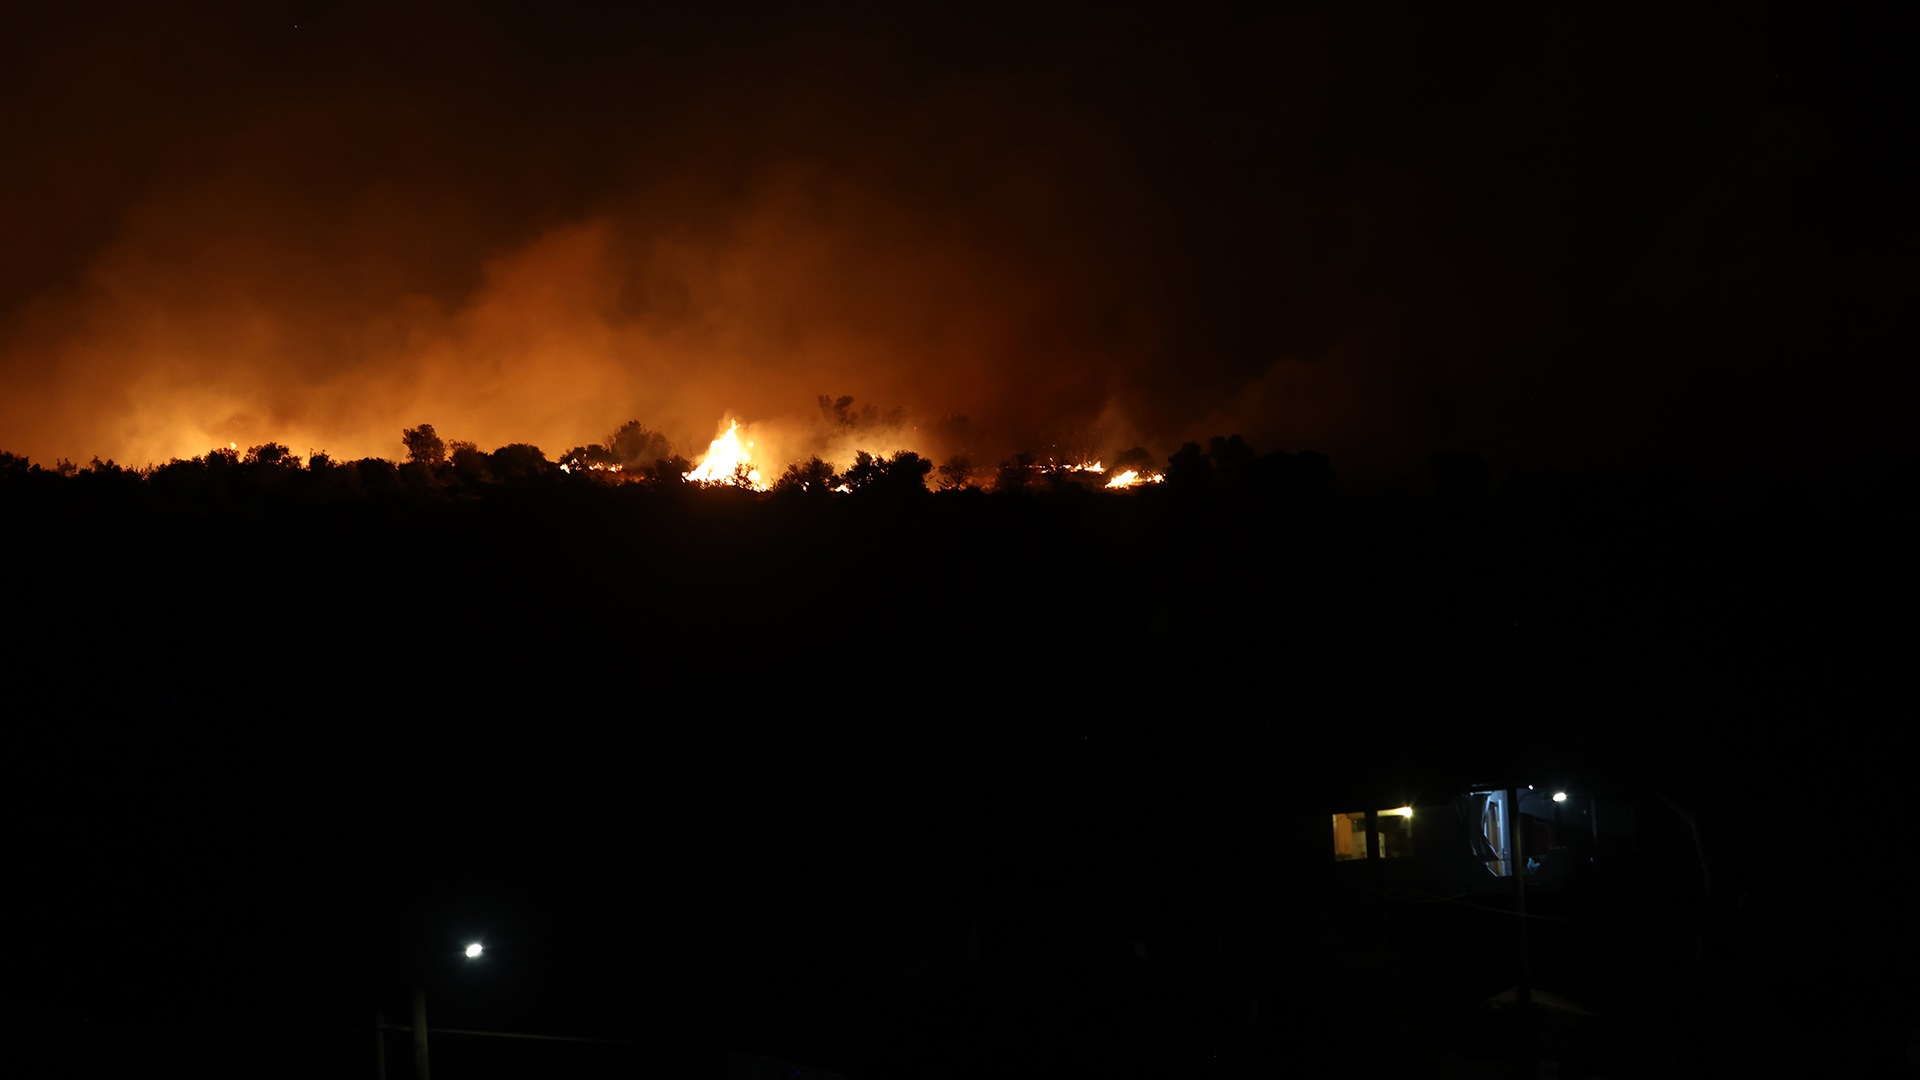 Μαραθώνας: Φωτιά στον Σχοινιά – Ενισχύθηκαν οι δυνάμεις της Πυροσβεστικής (φωτο) (upd)